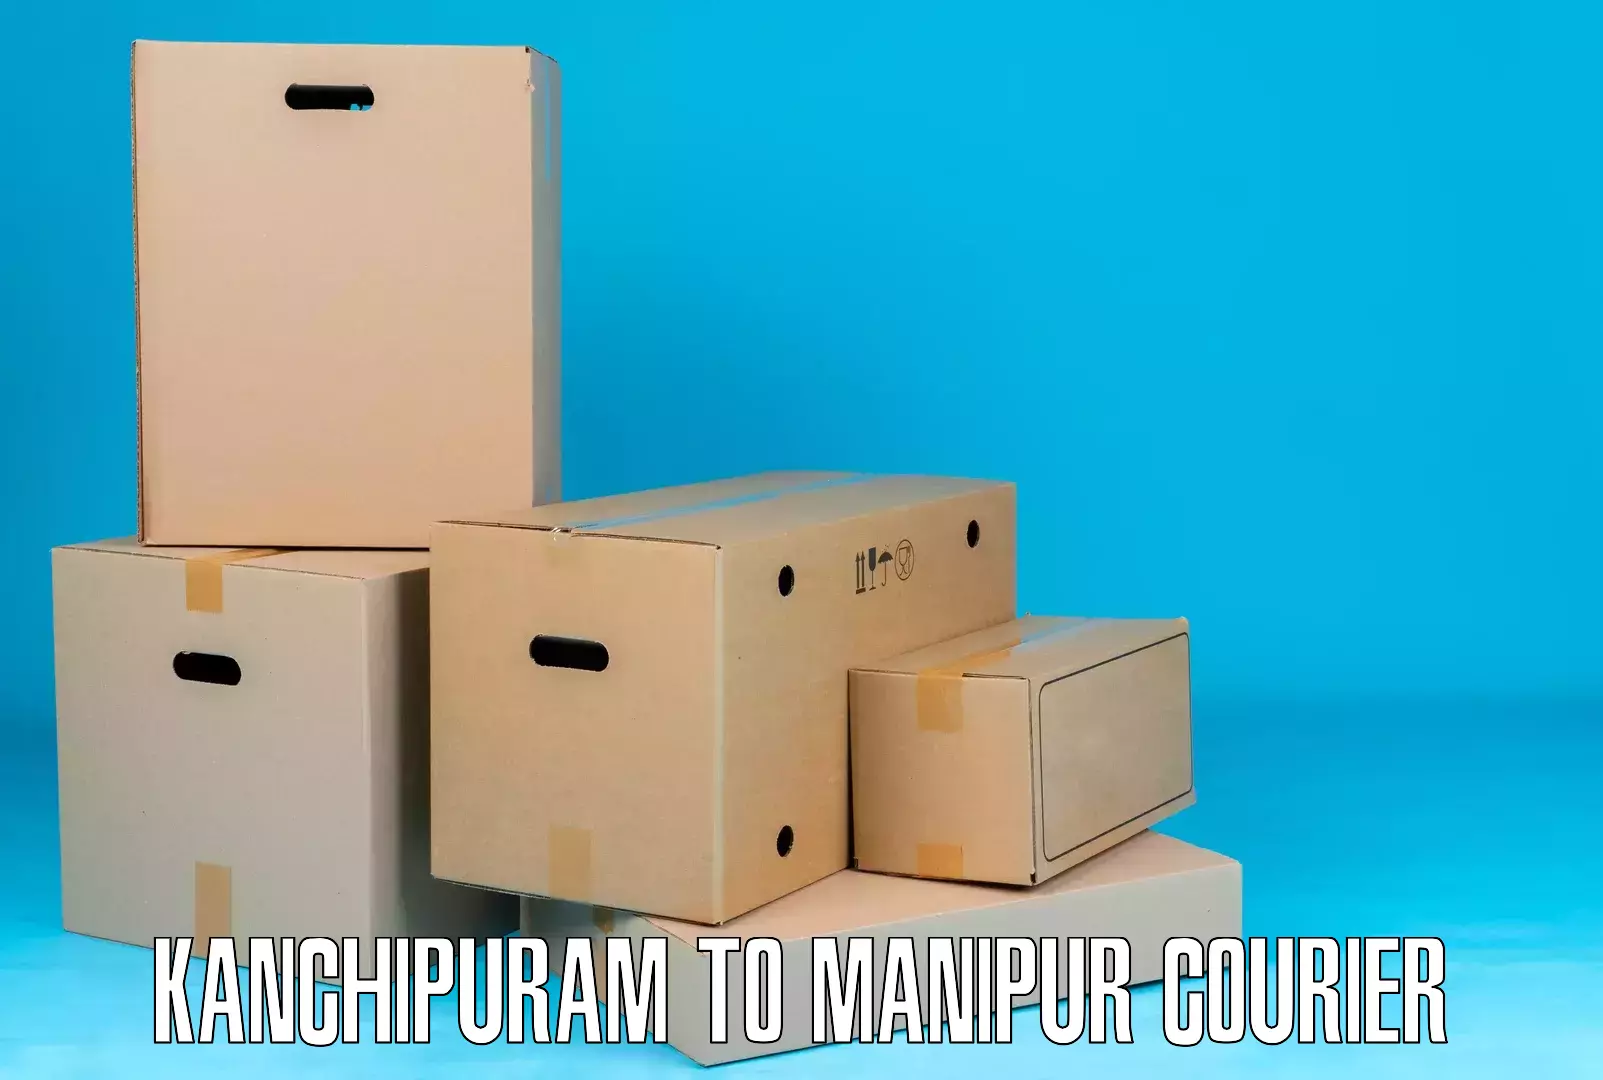 Full-service courier options Kanchipuram to Ukhrul